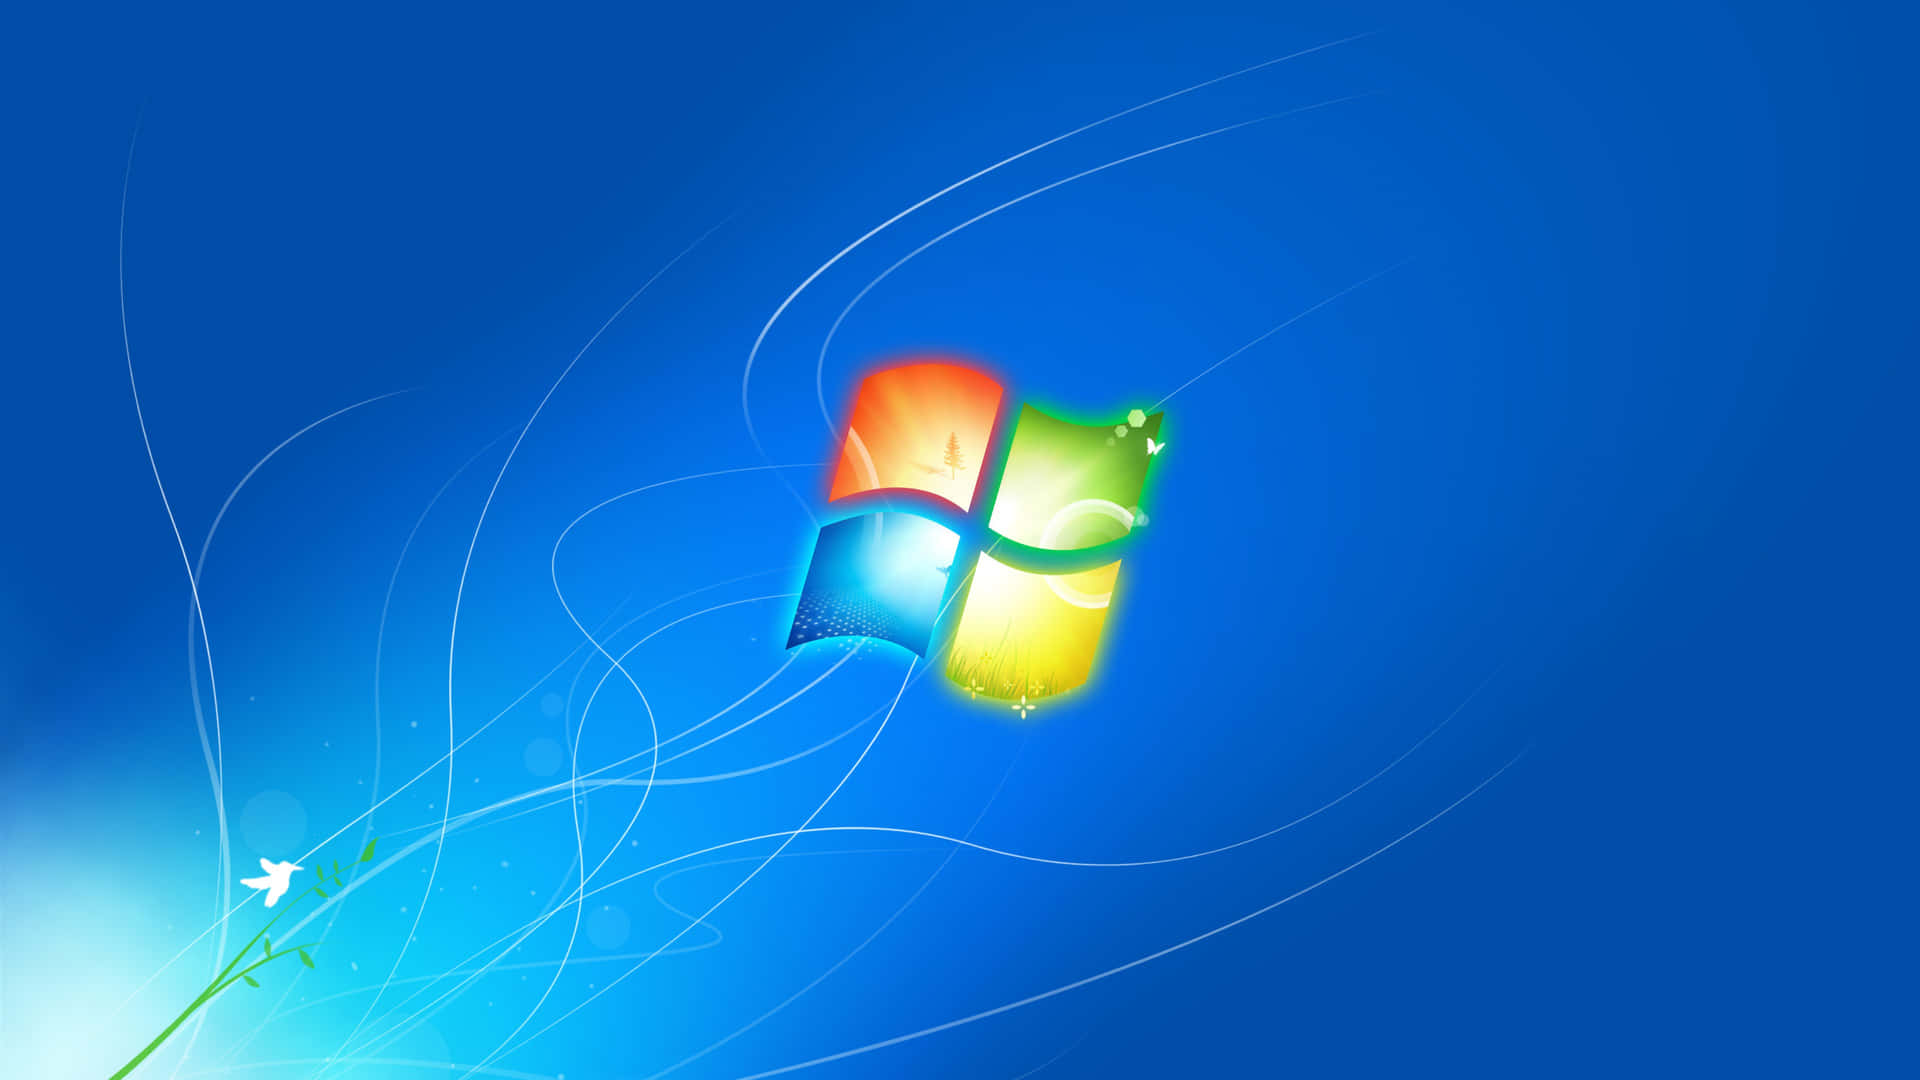 Nyd den glatte brugergrænseflade af original Windows XP.